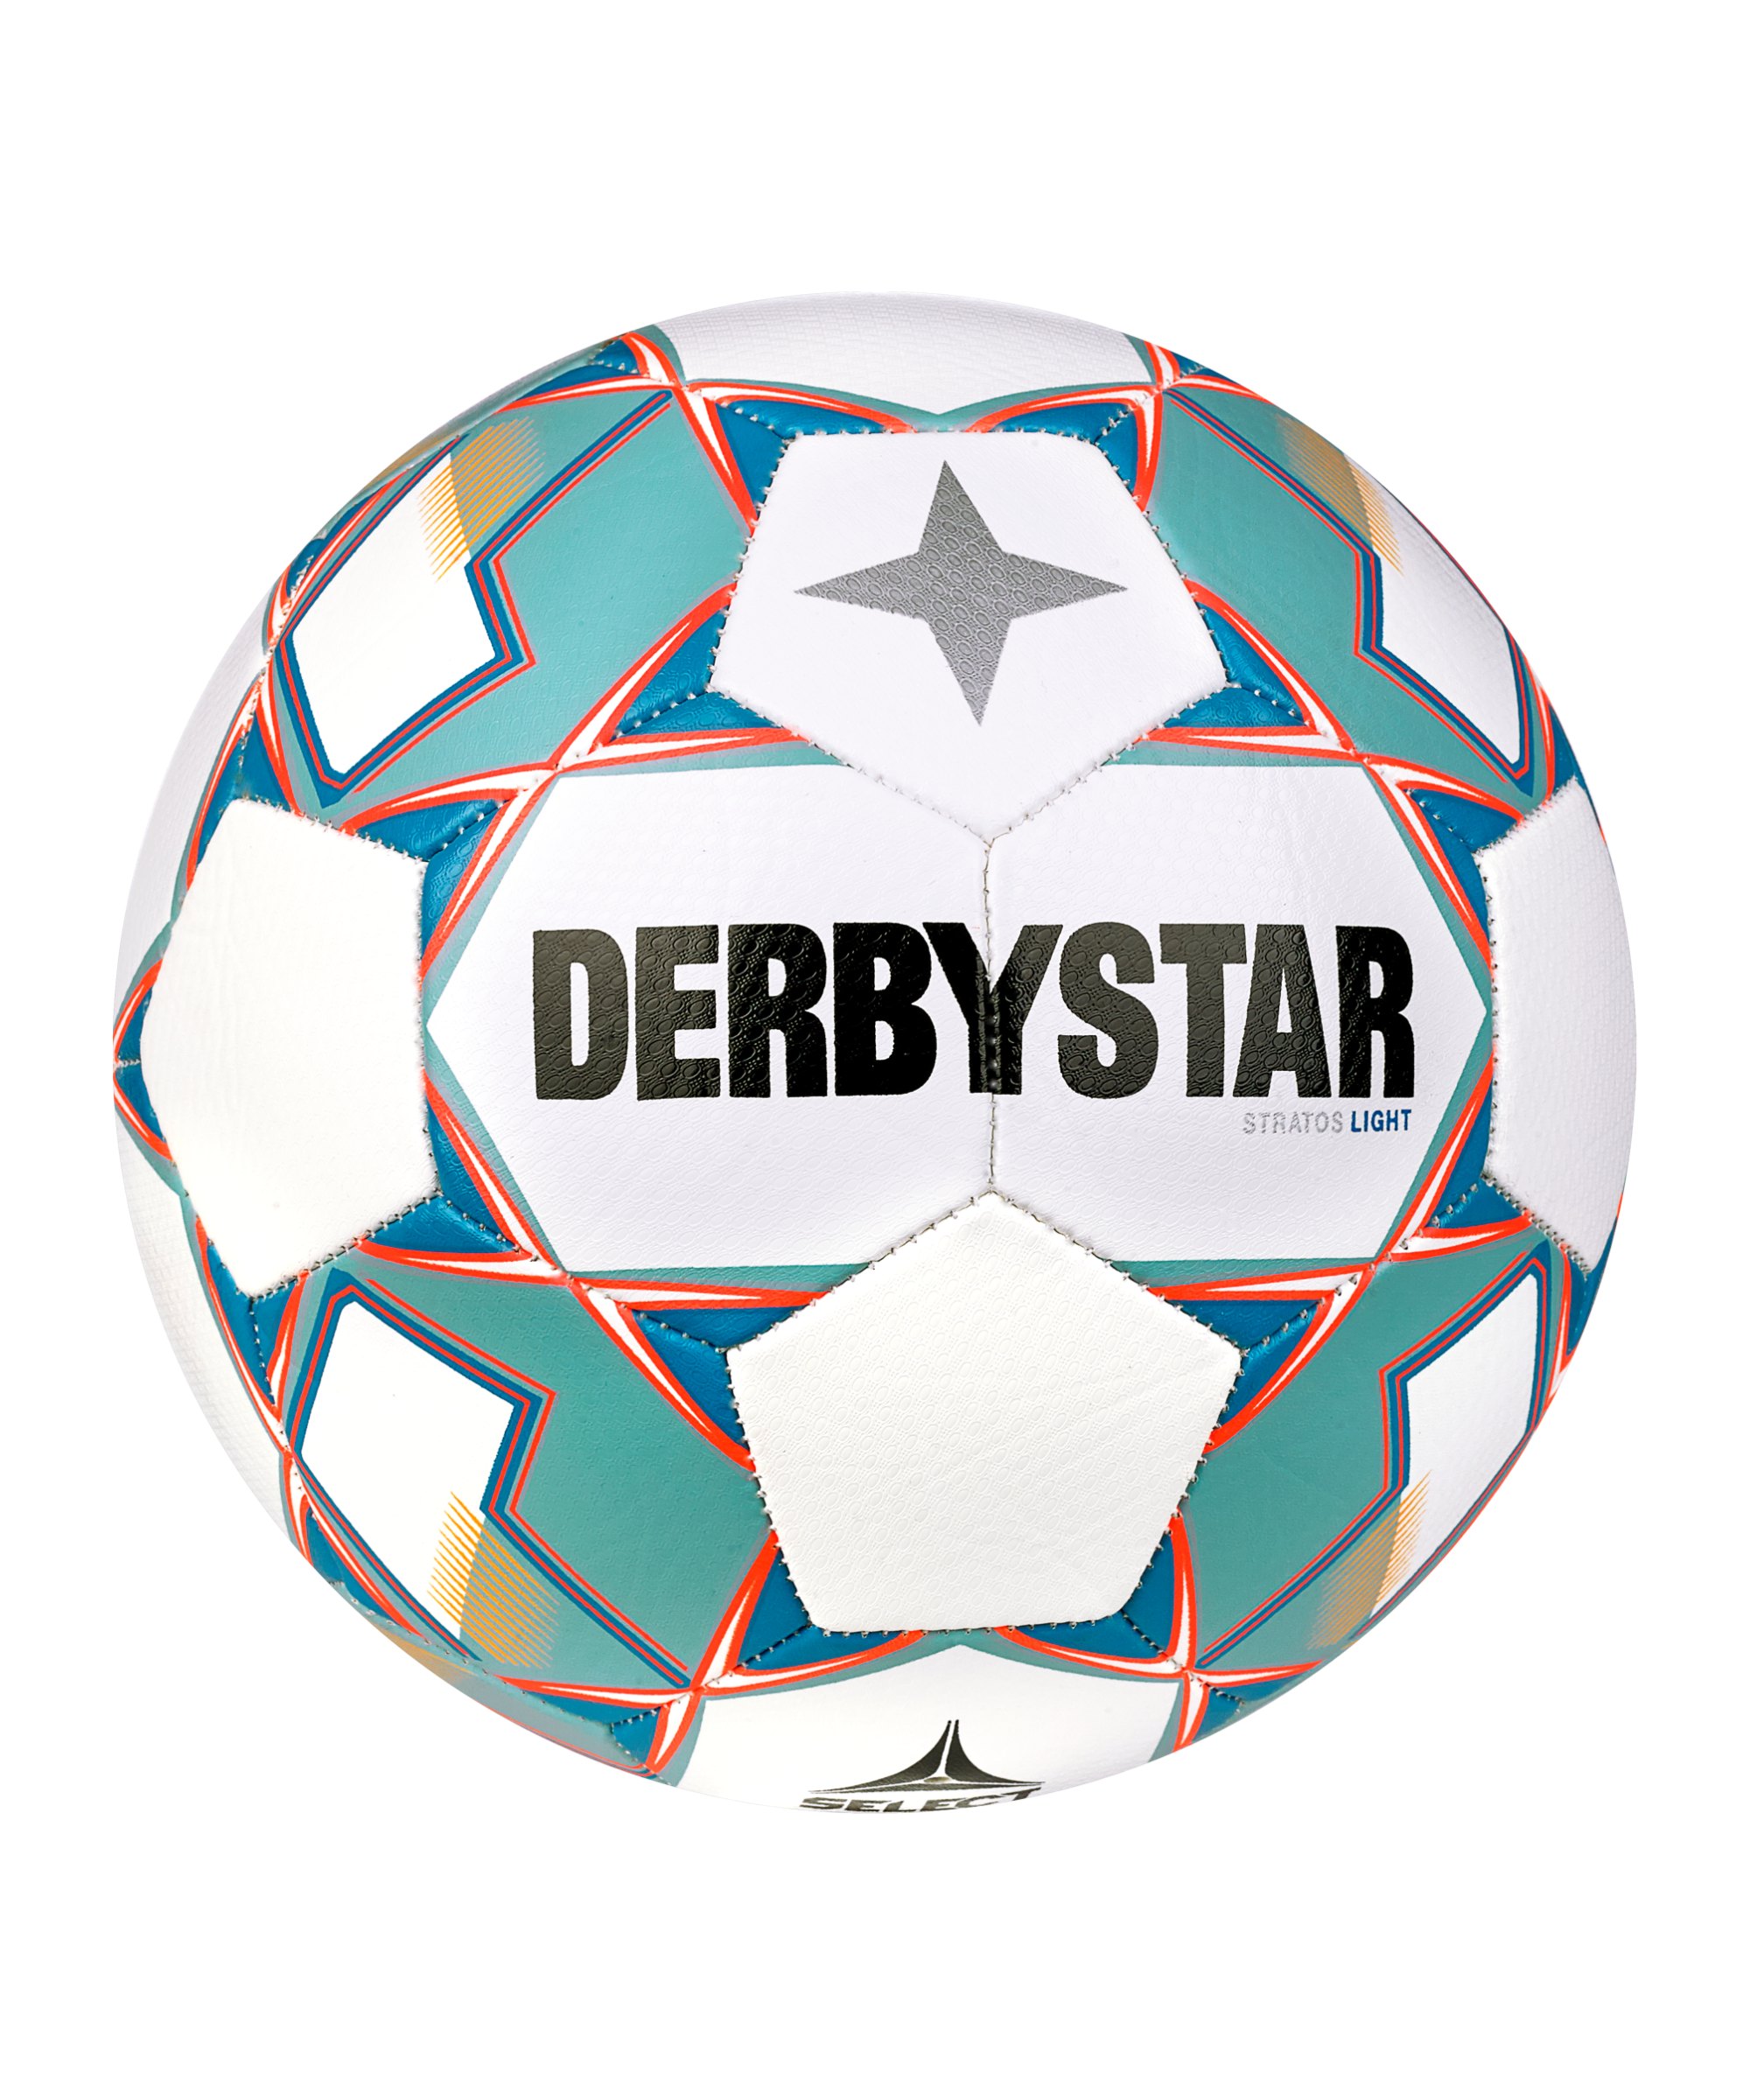 Derbystar Stratos Light 350g v23 Lightball F167 - weiss